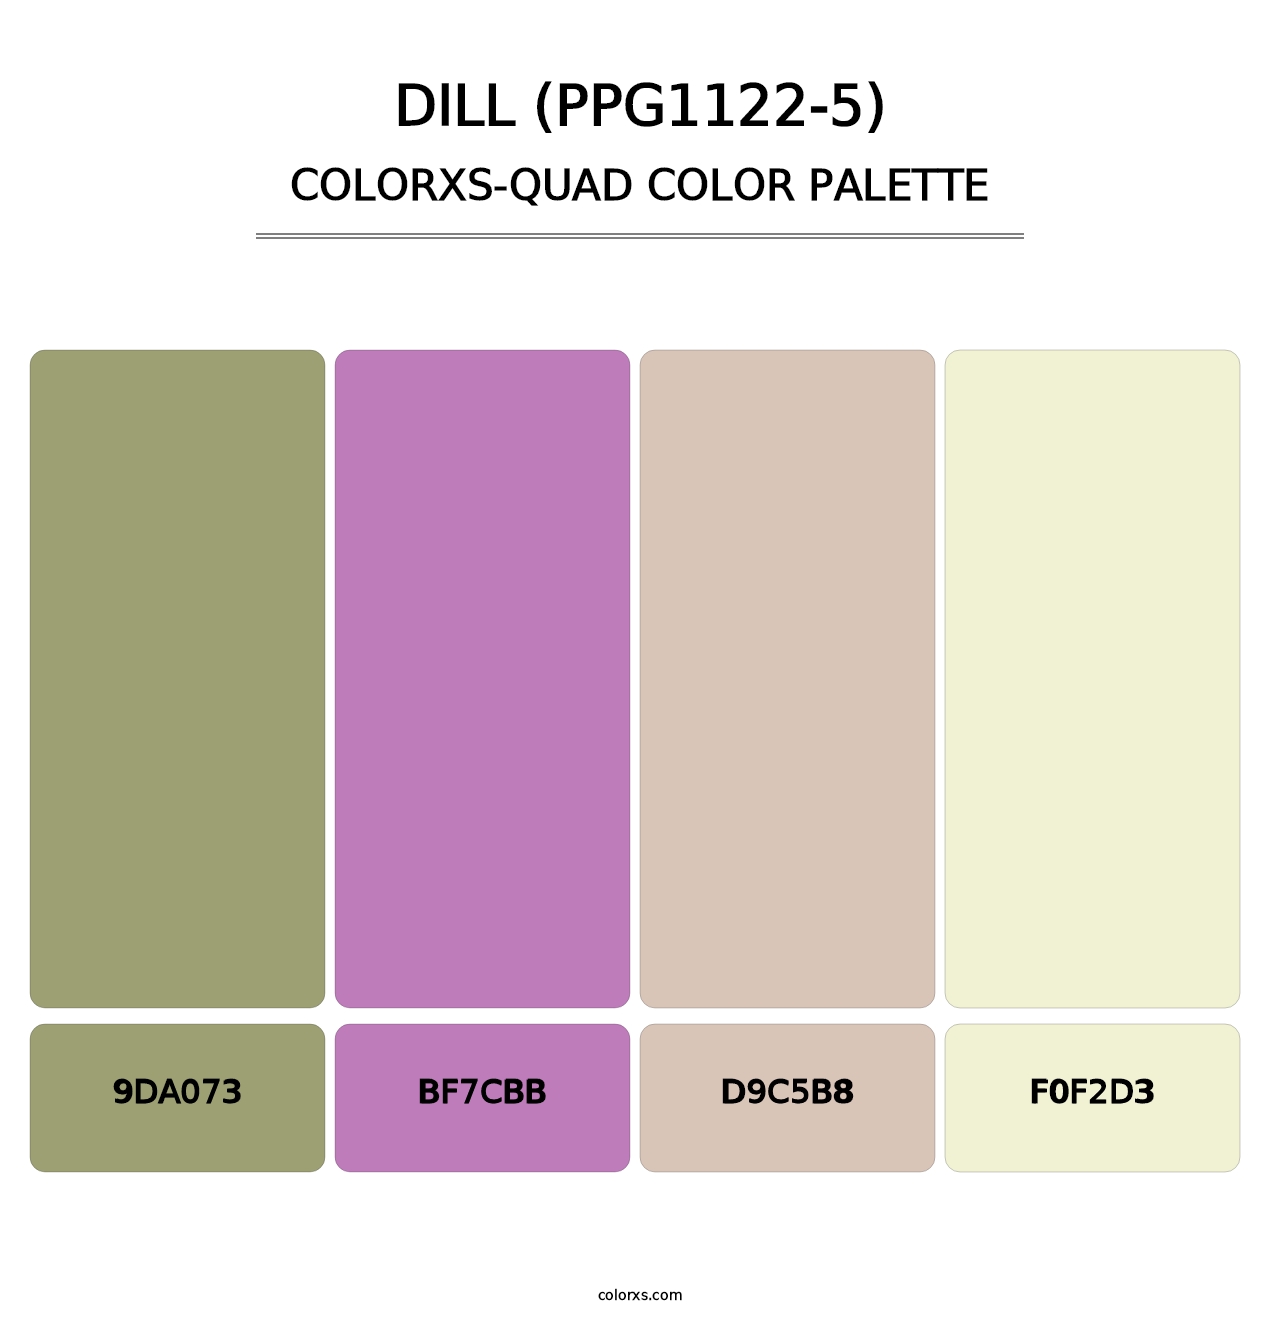 Dill (PPG1122-5) - Colorxs Quad Palette